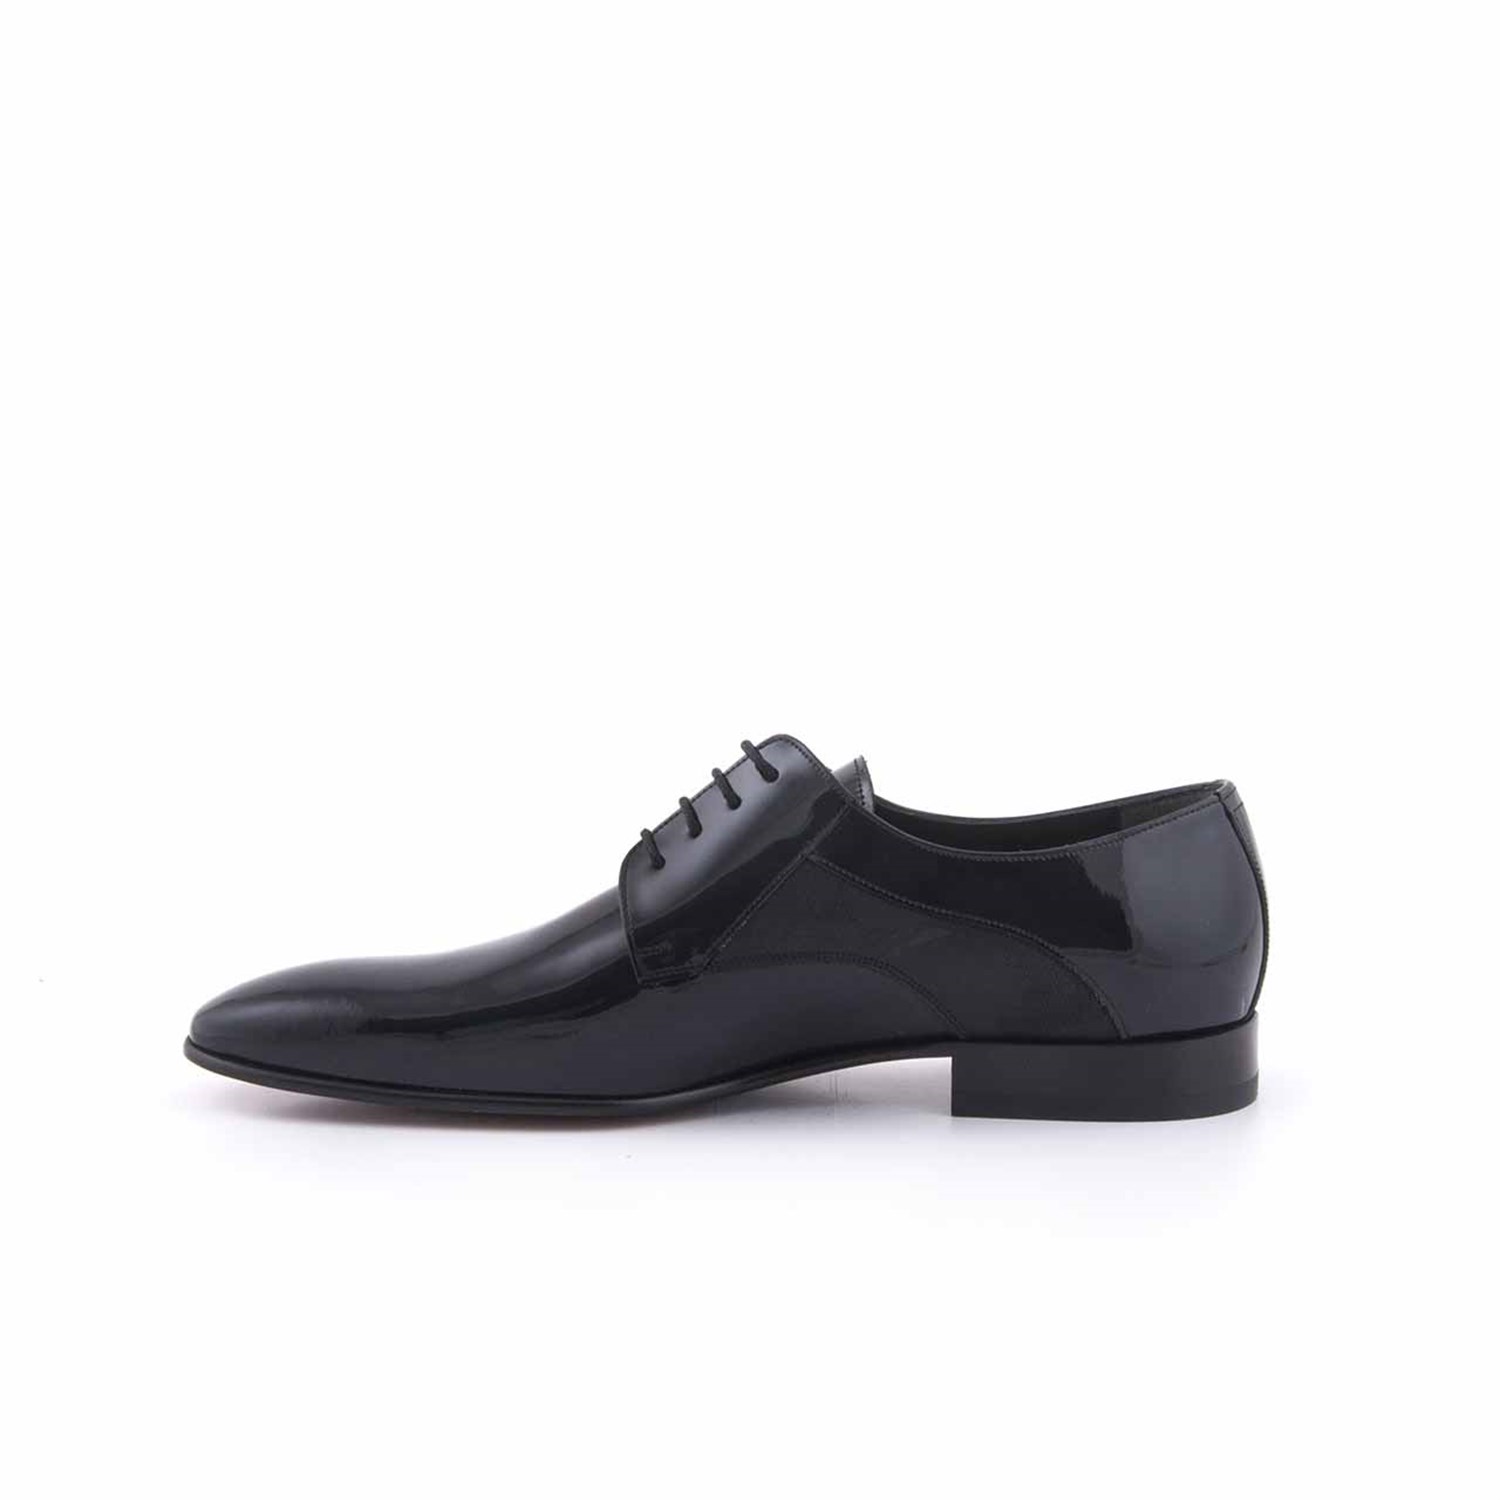 Kemal Tanca Deri Bağcıklı Erkek Klasik Ayakkabı 4126 | Kemal Tanca